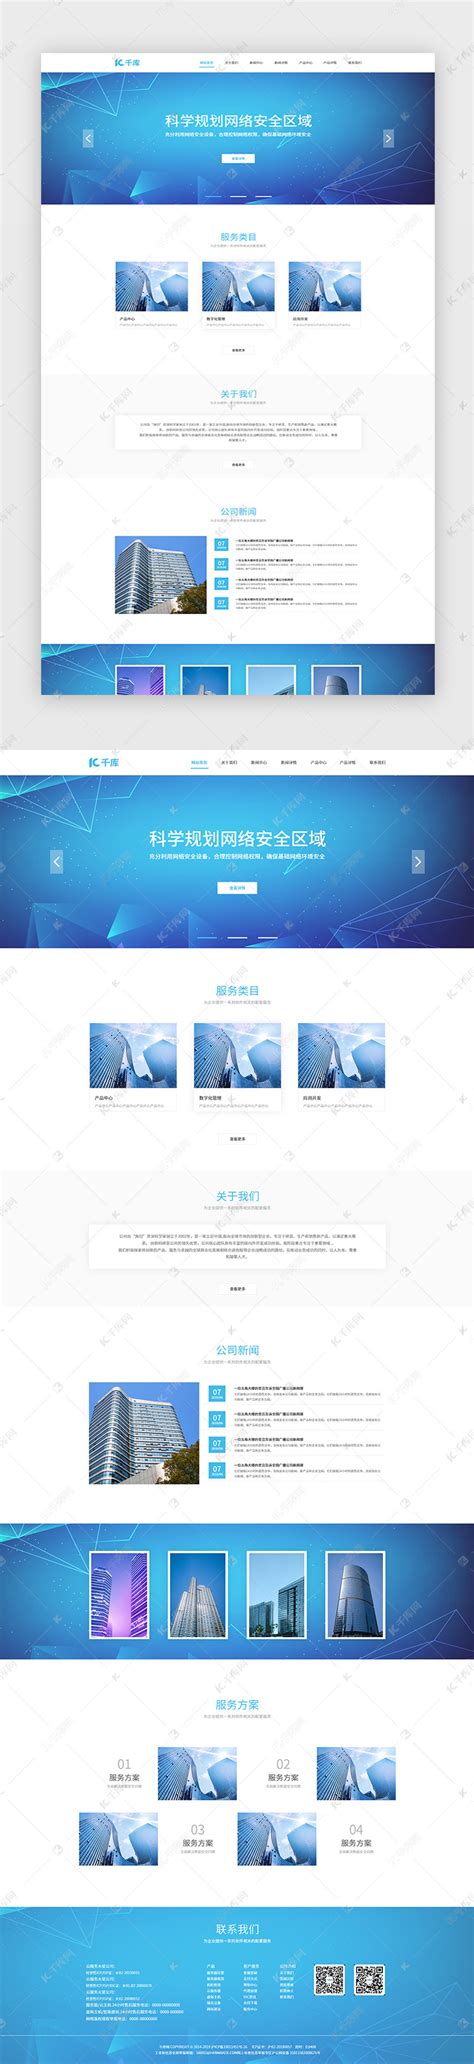 蓝色安全服务企业网站主页ui界面设计素材-千库网